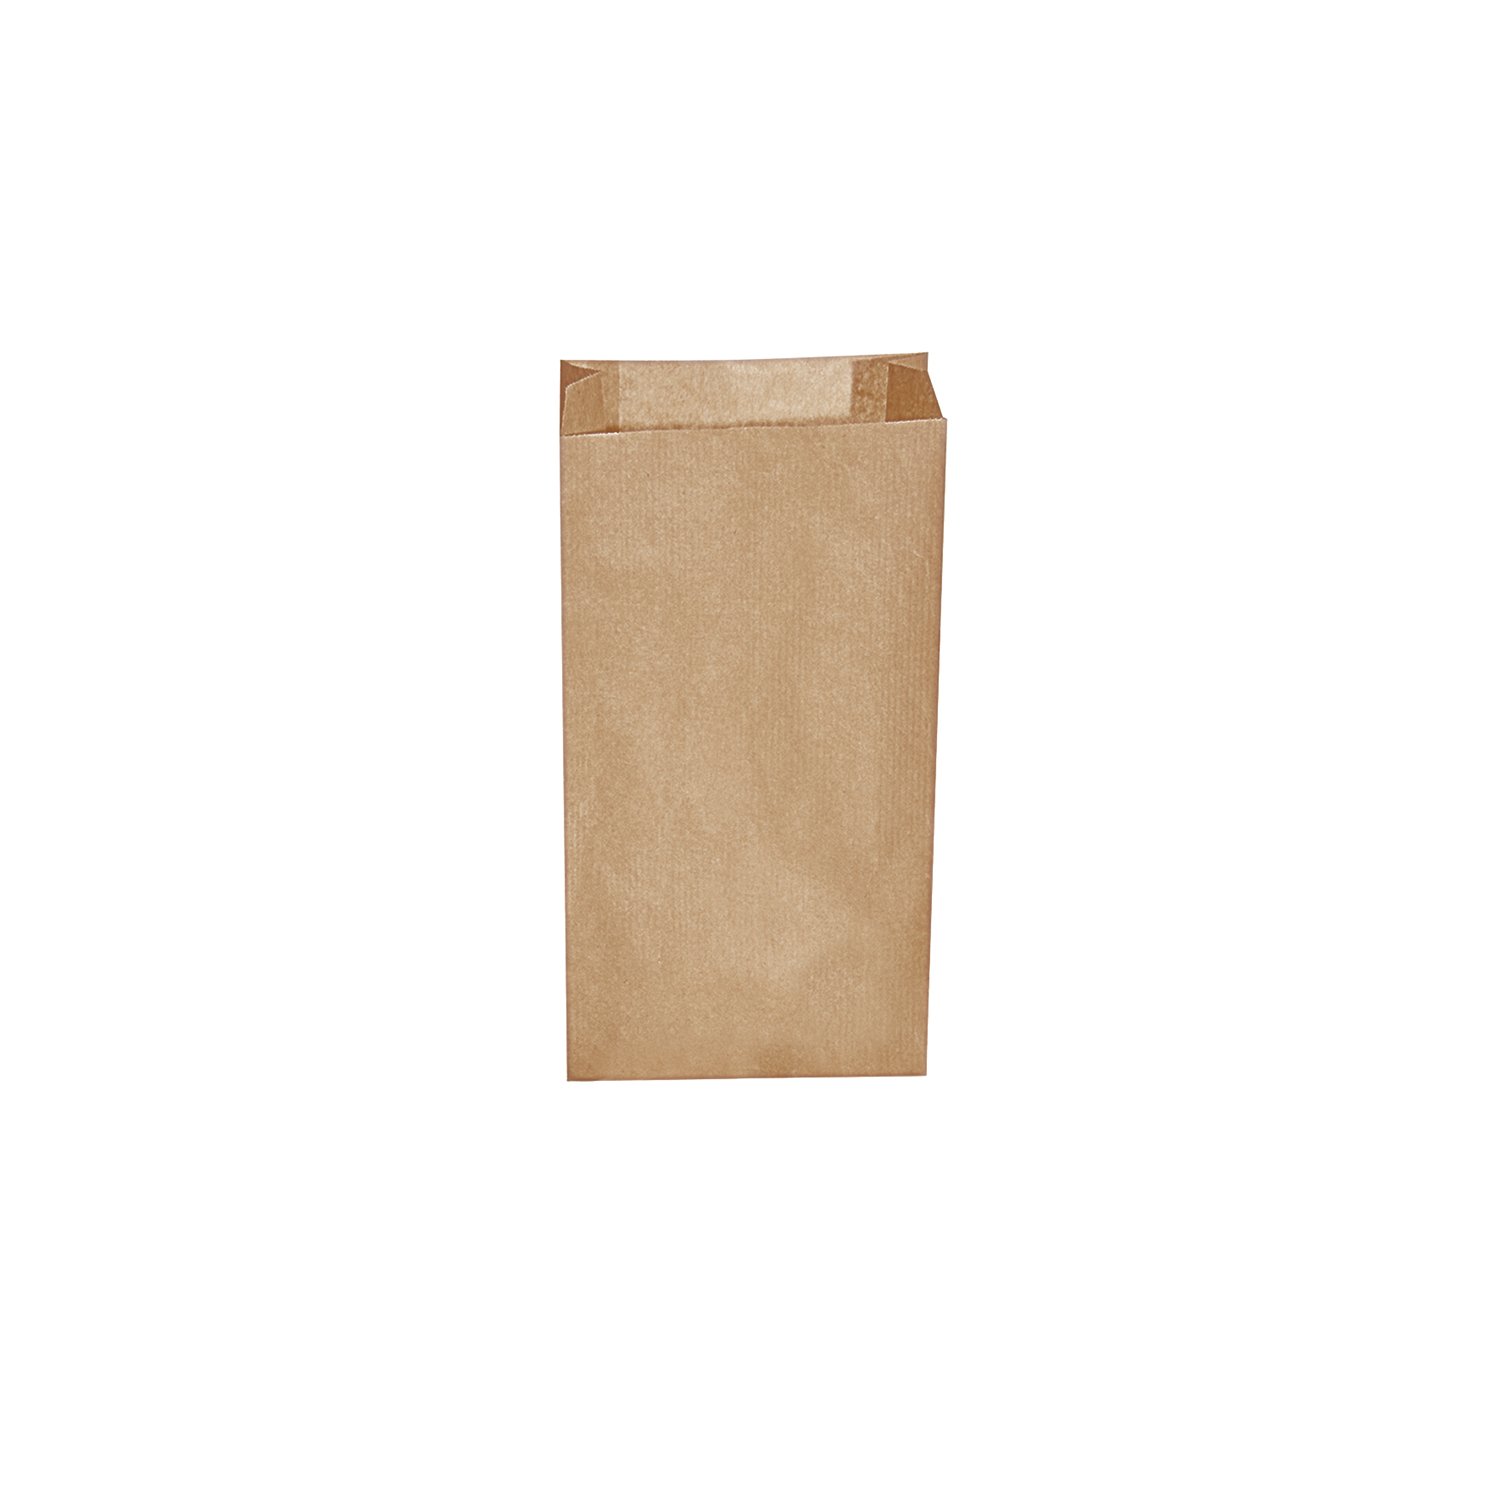 Desiatové pap. vrecká hnedé 1kg (12+5 x 24cm) [500 ks] 